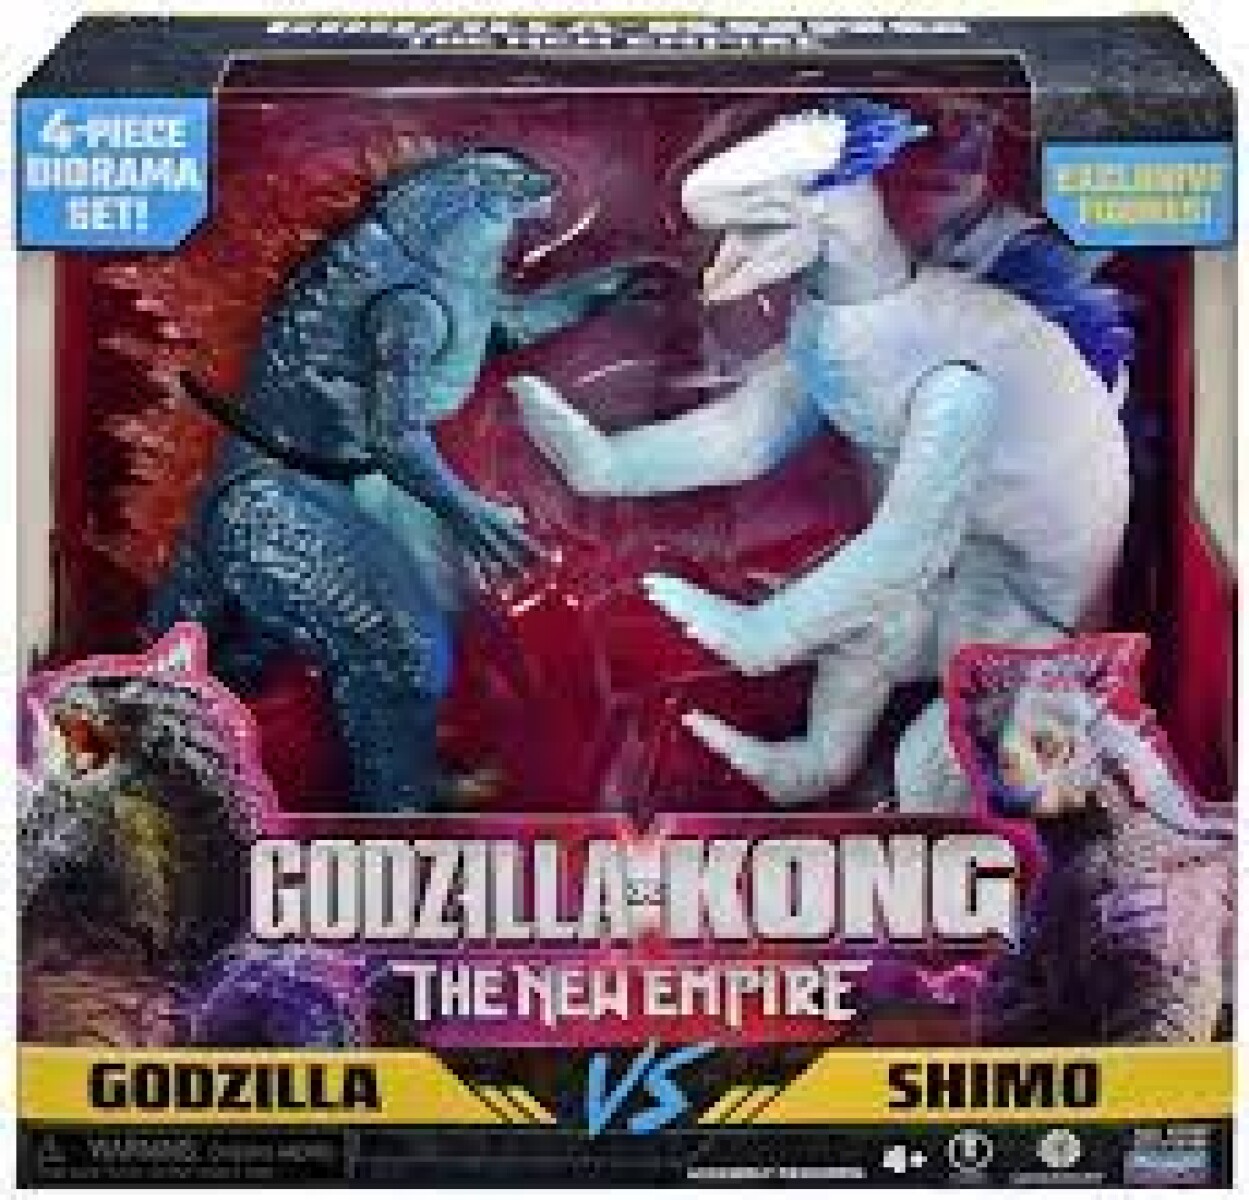 Godzilla x Kong The New Empire Monsterverse Godzilla vs Shimo Figura de acción Paquete de 2 